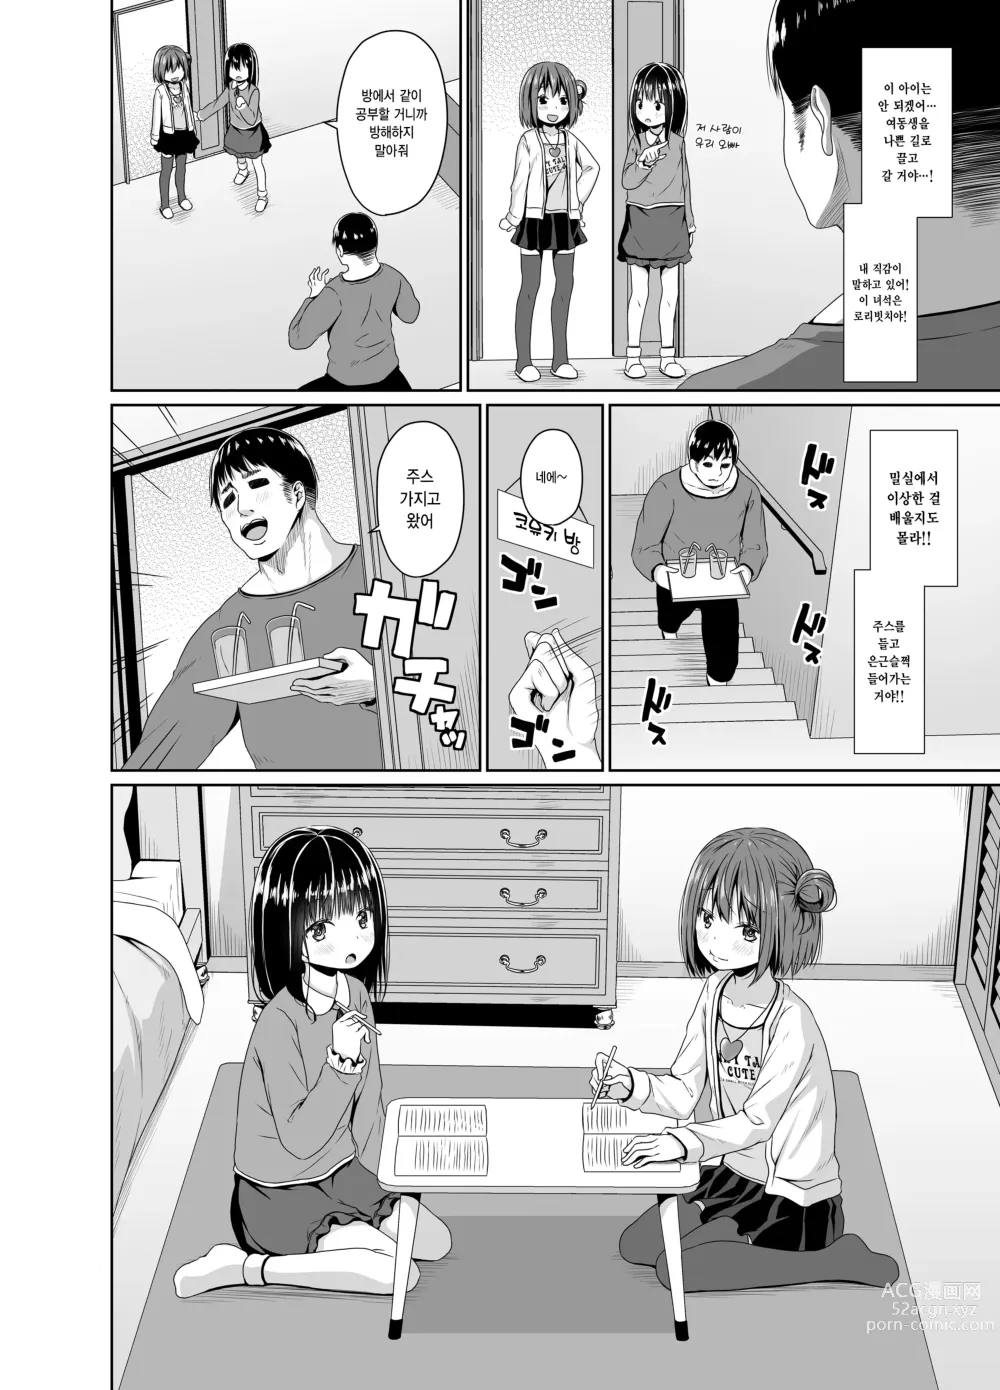 Page 3 of doujinshi 청초한 여동생의 친구는 메스가키였다